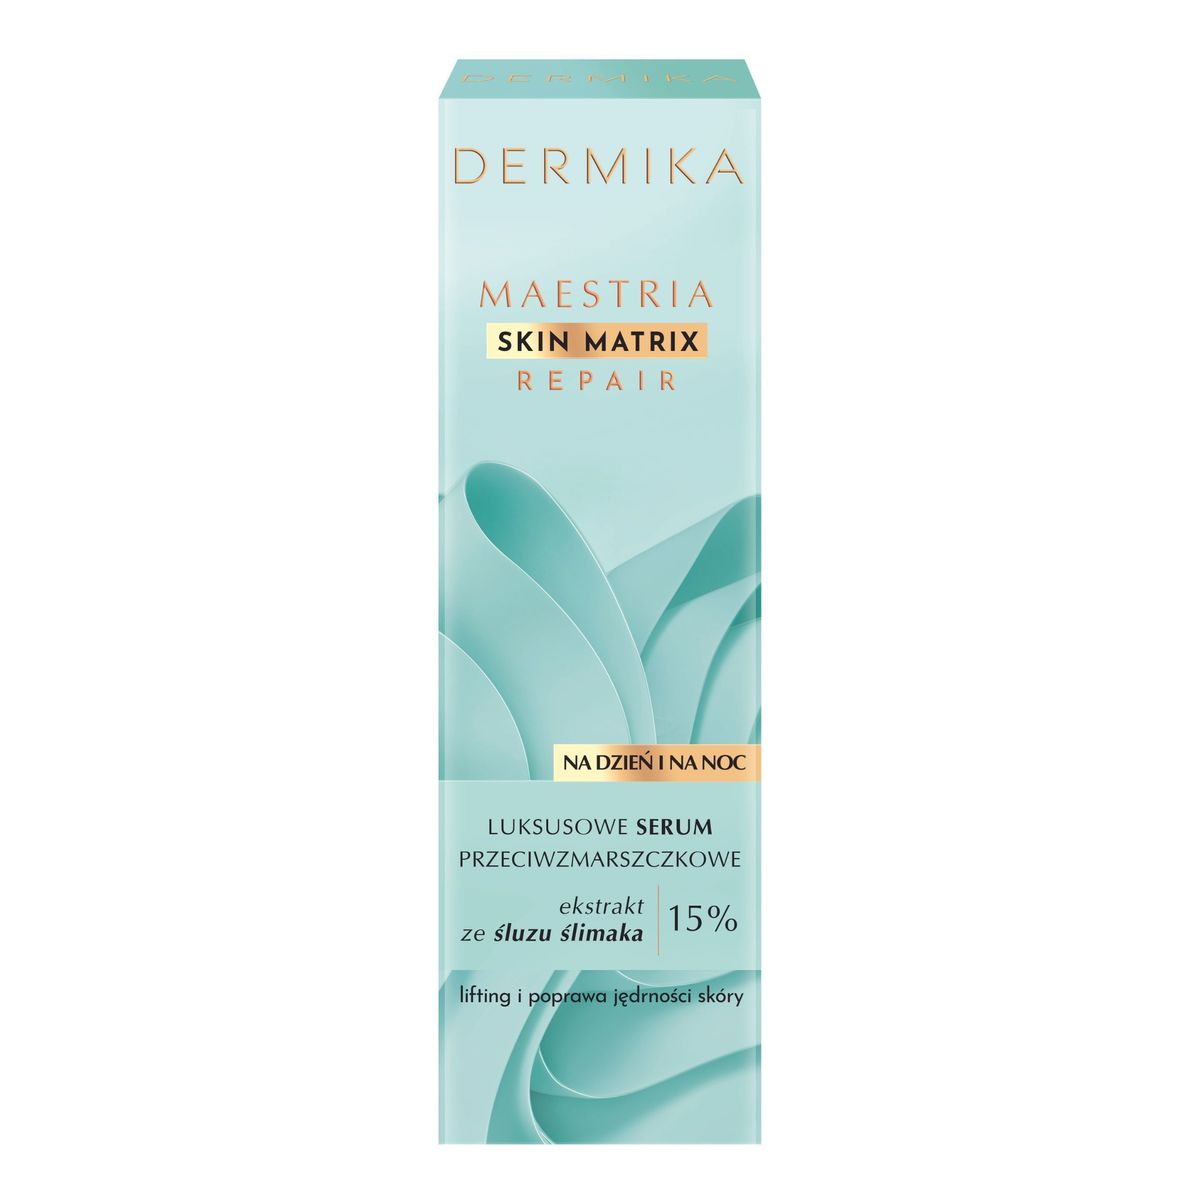 Dermika Maestria Skin Matrix Repair Luksusowe serum przeciwzmarszczkowe na dzień i na noc 30ml